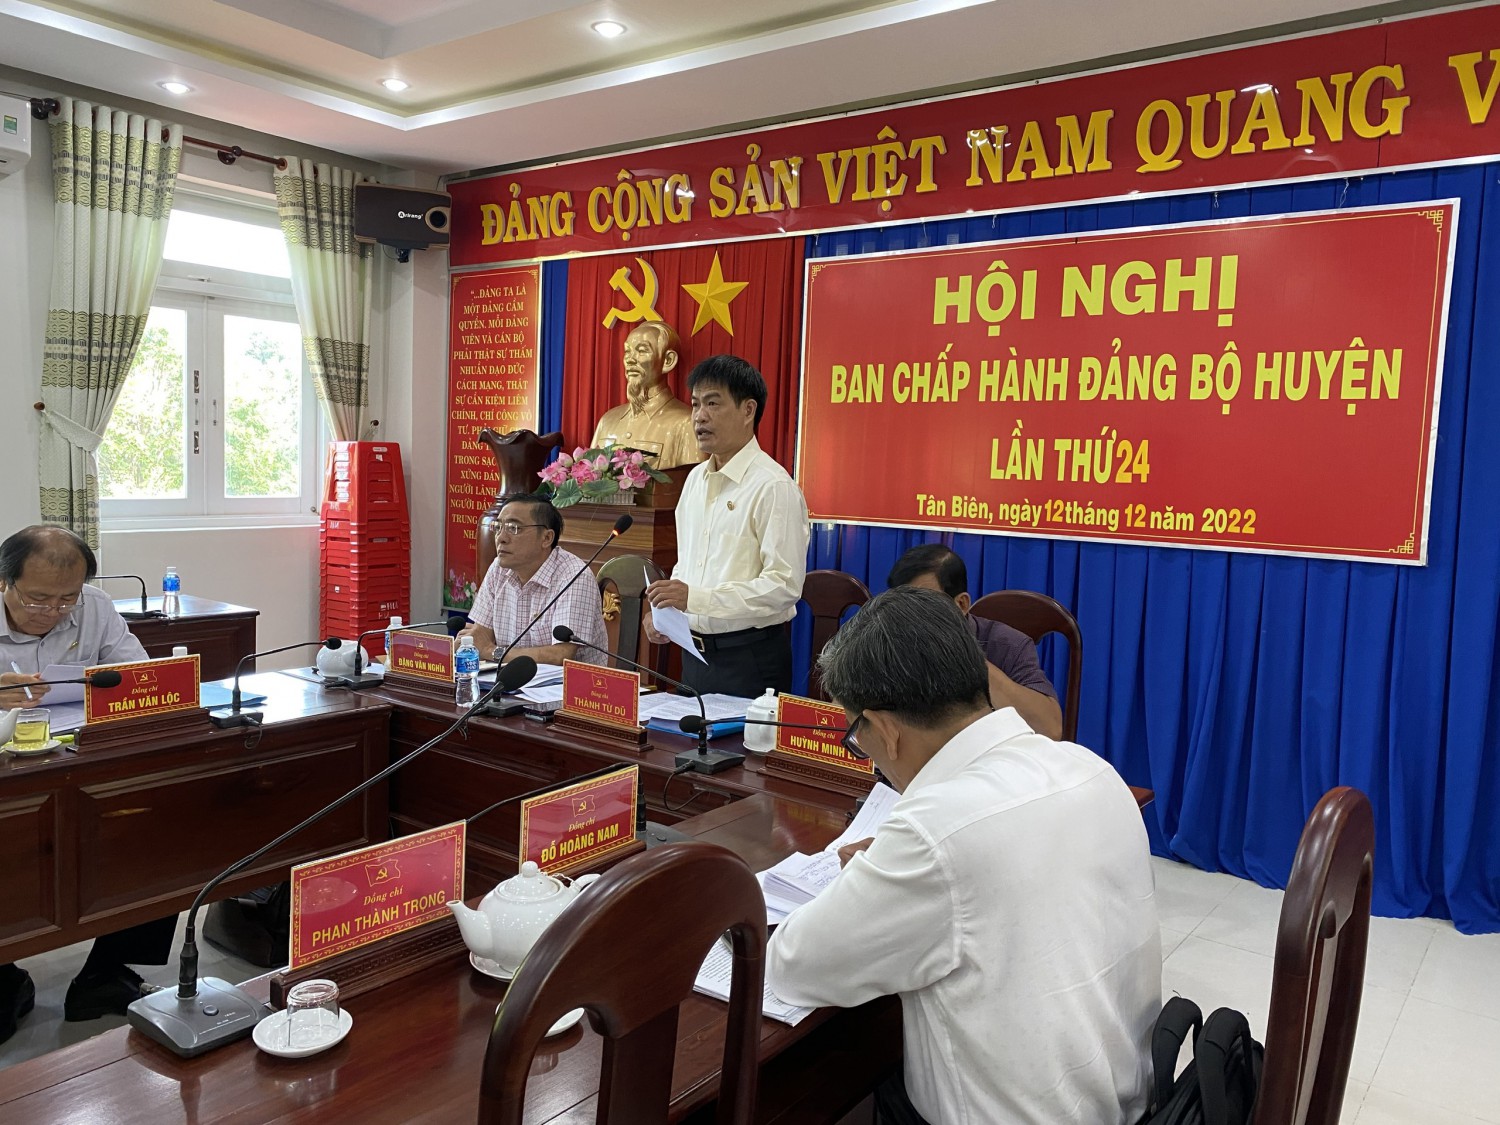 Ban chấp hành đảng bộ huyện Tân Biên kỳ họp lần thứ 24 năm 2022